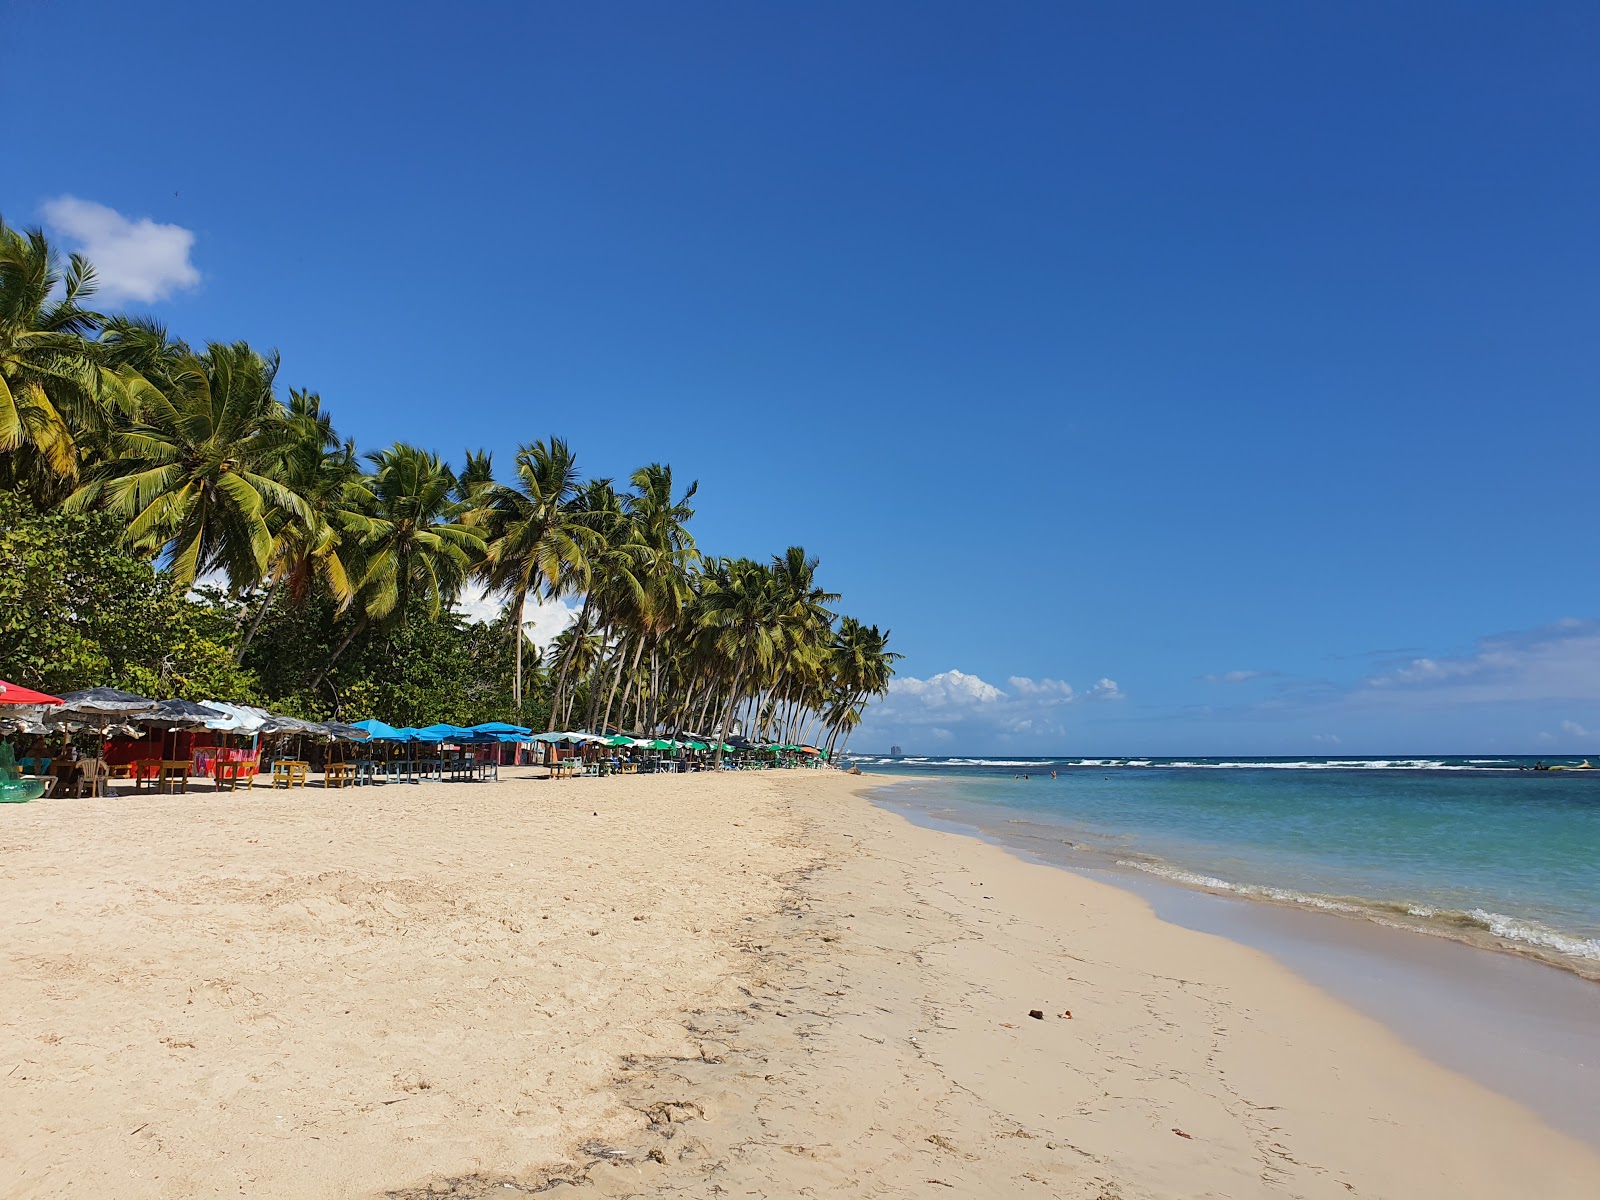 Foto di Guayacanes beach con una superficie del sabbia fine e luminosa